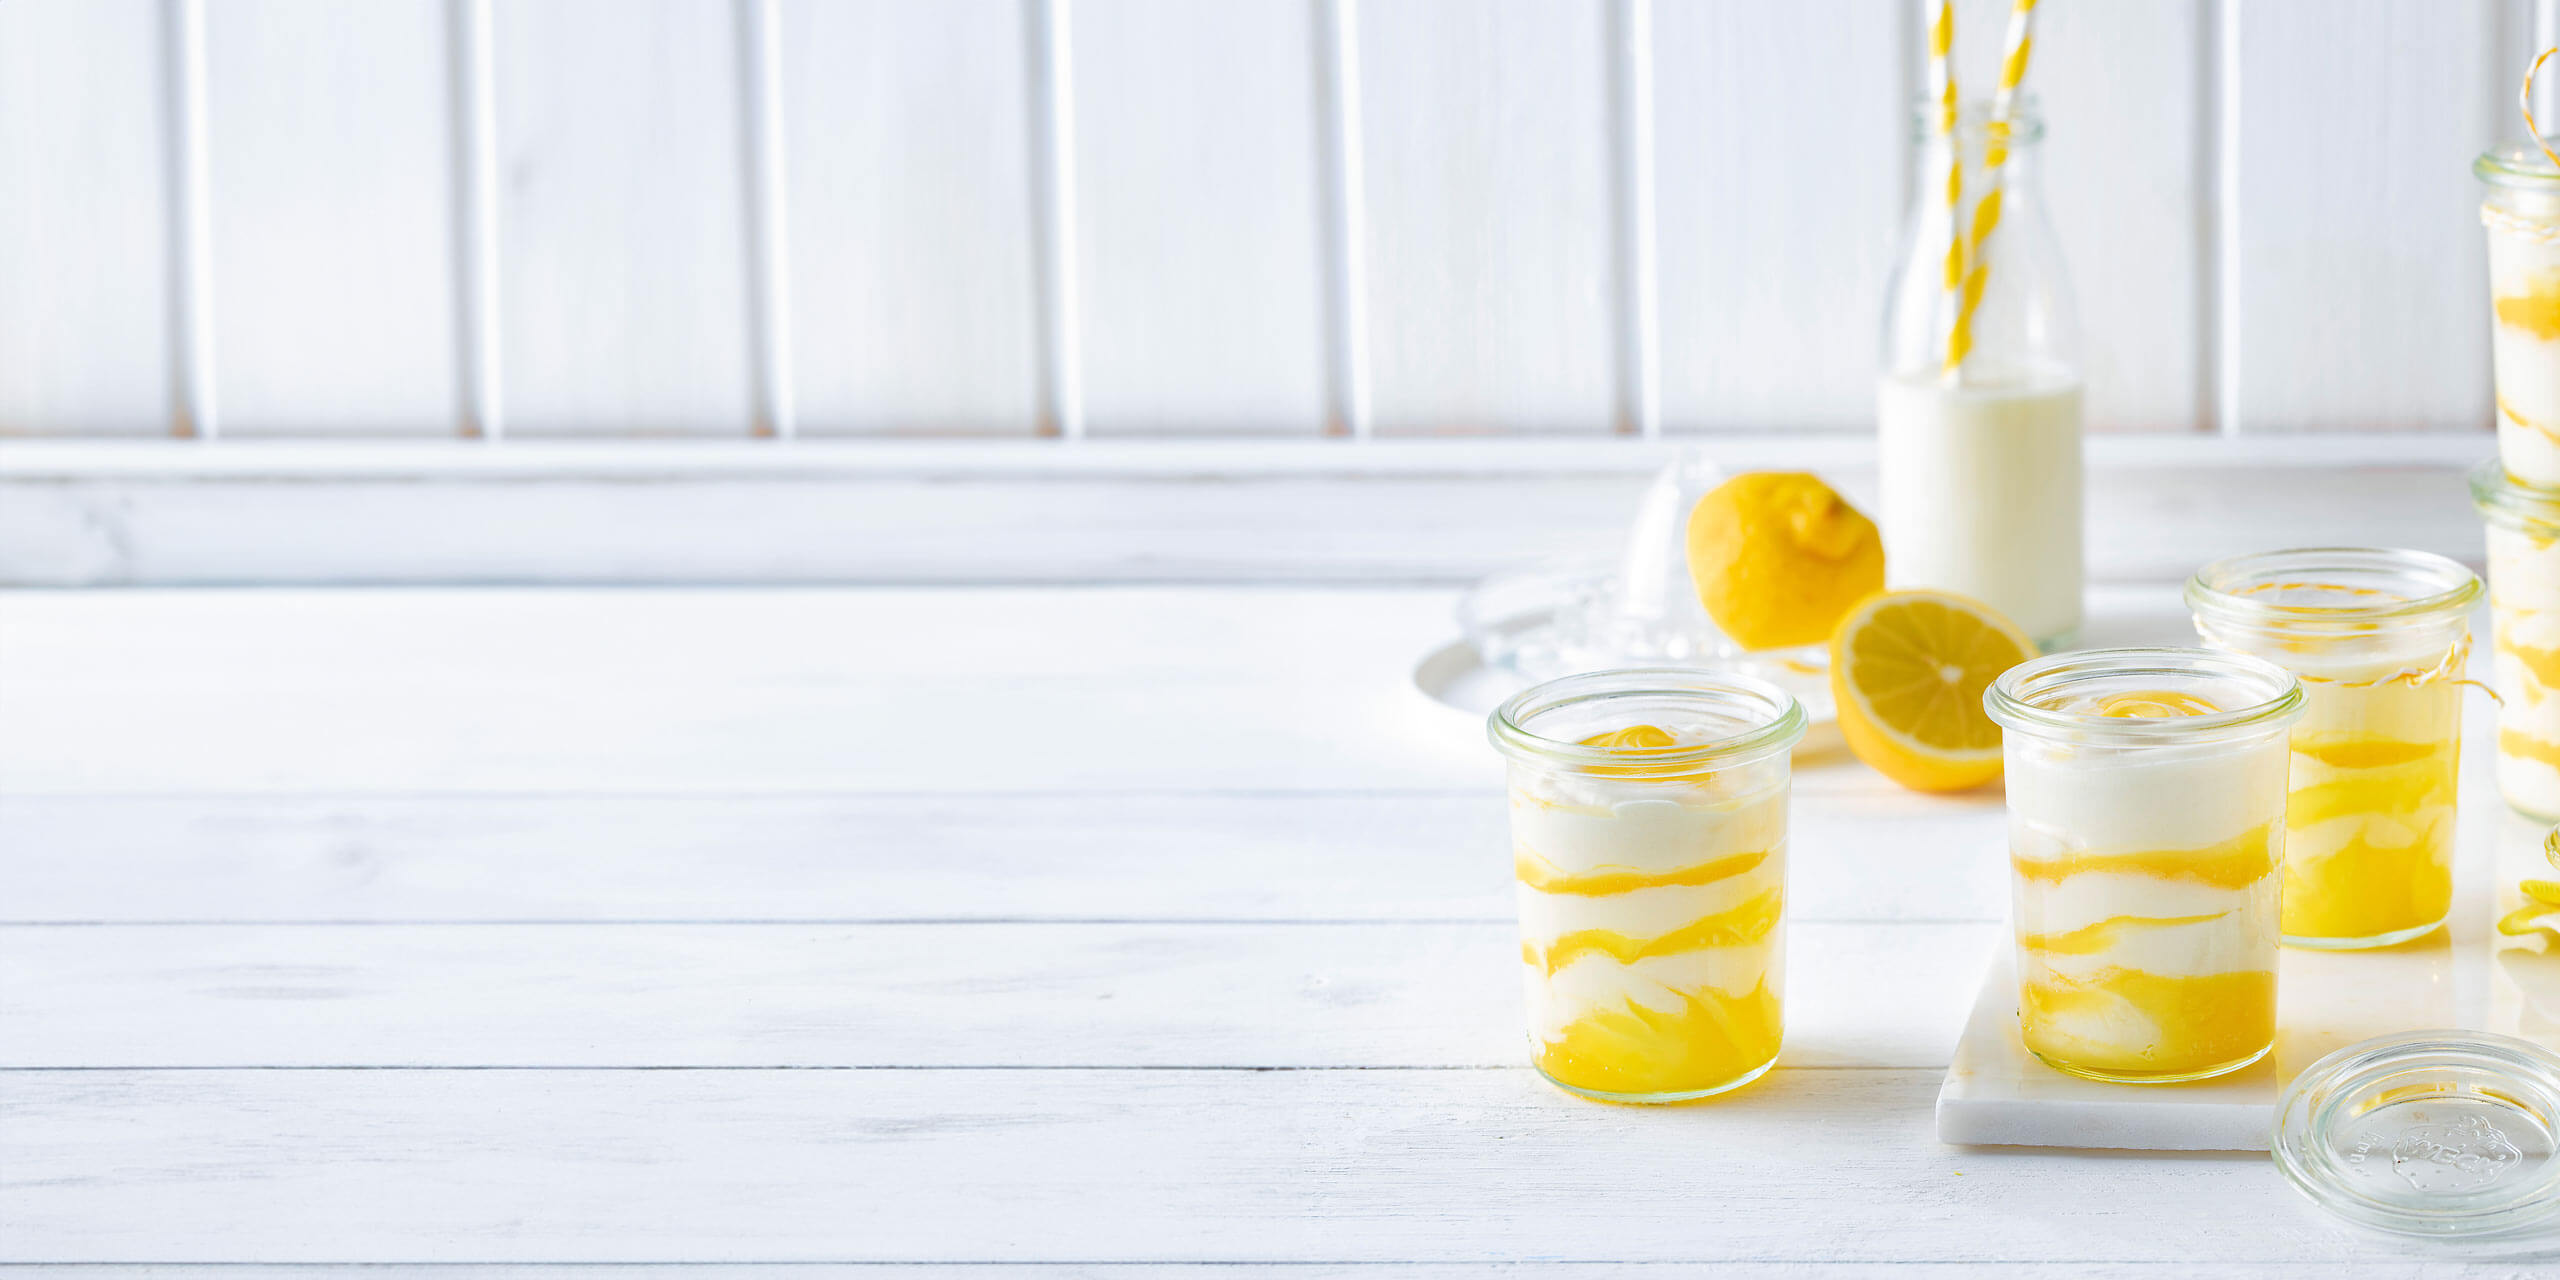 Gläser mit Lemon-Curd-Mousse mit frischen Zitronenscheiben auf einem weißen Holztisch, dazu eine Flasche Milch und eine ganze Zitrone. Helles, erfrischendes Ambiente.